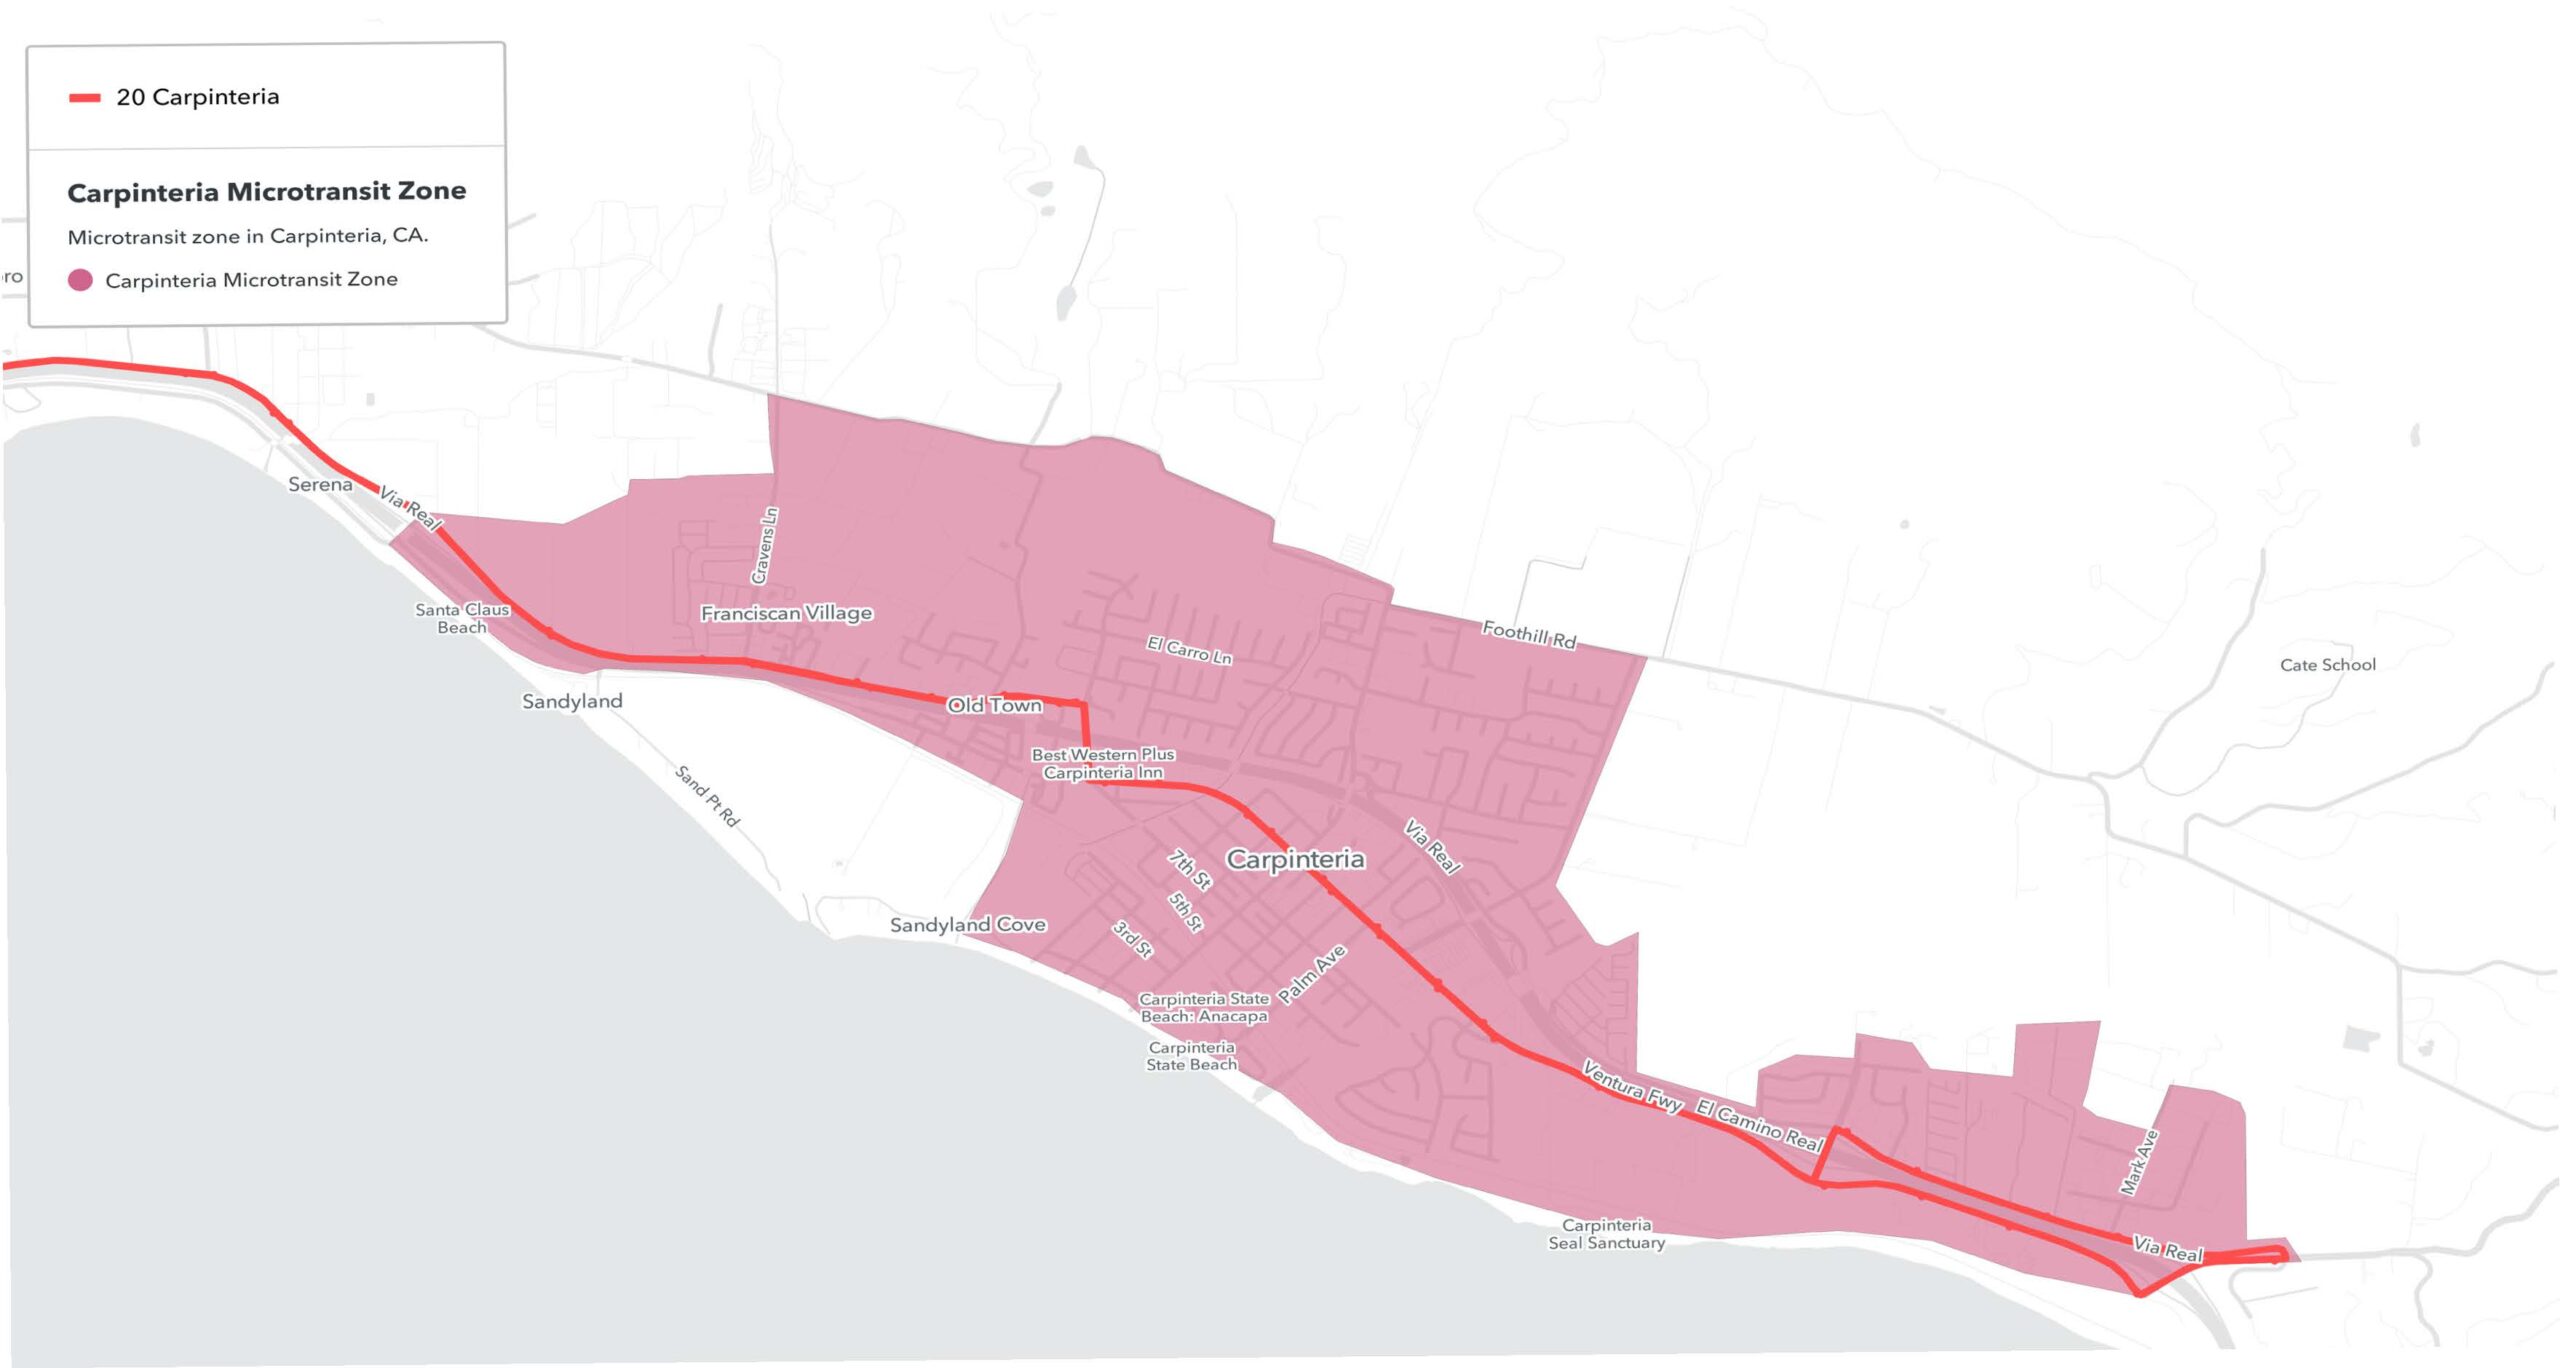 Un mapa del área de Carpinteria sombreado en rojo para indicar la disponibilidad del servicio de microtránsito dentro de esa zona.